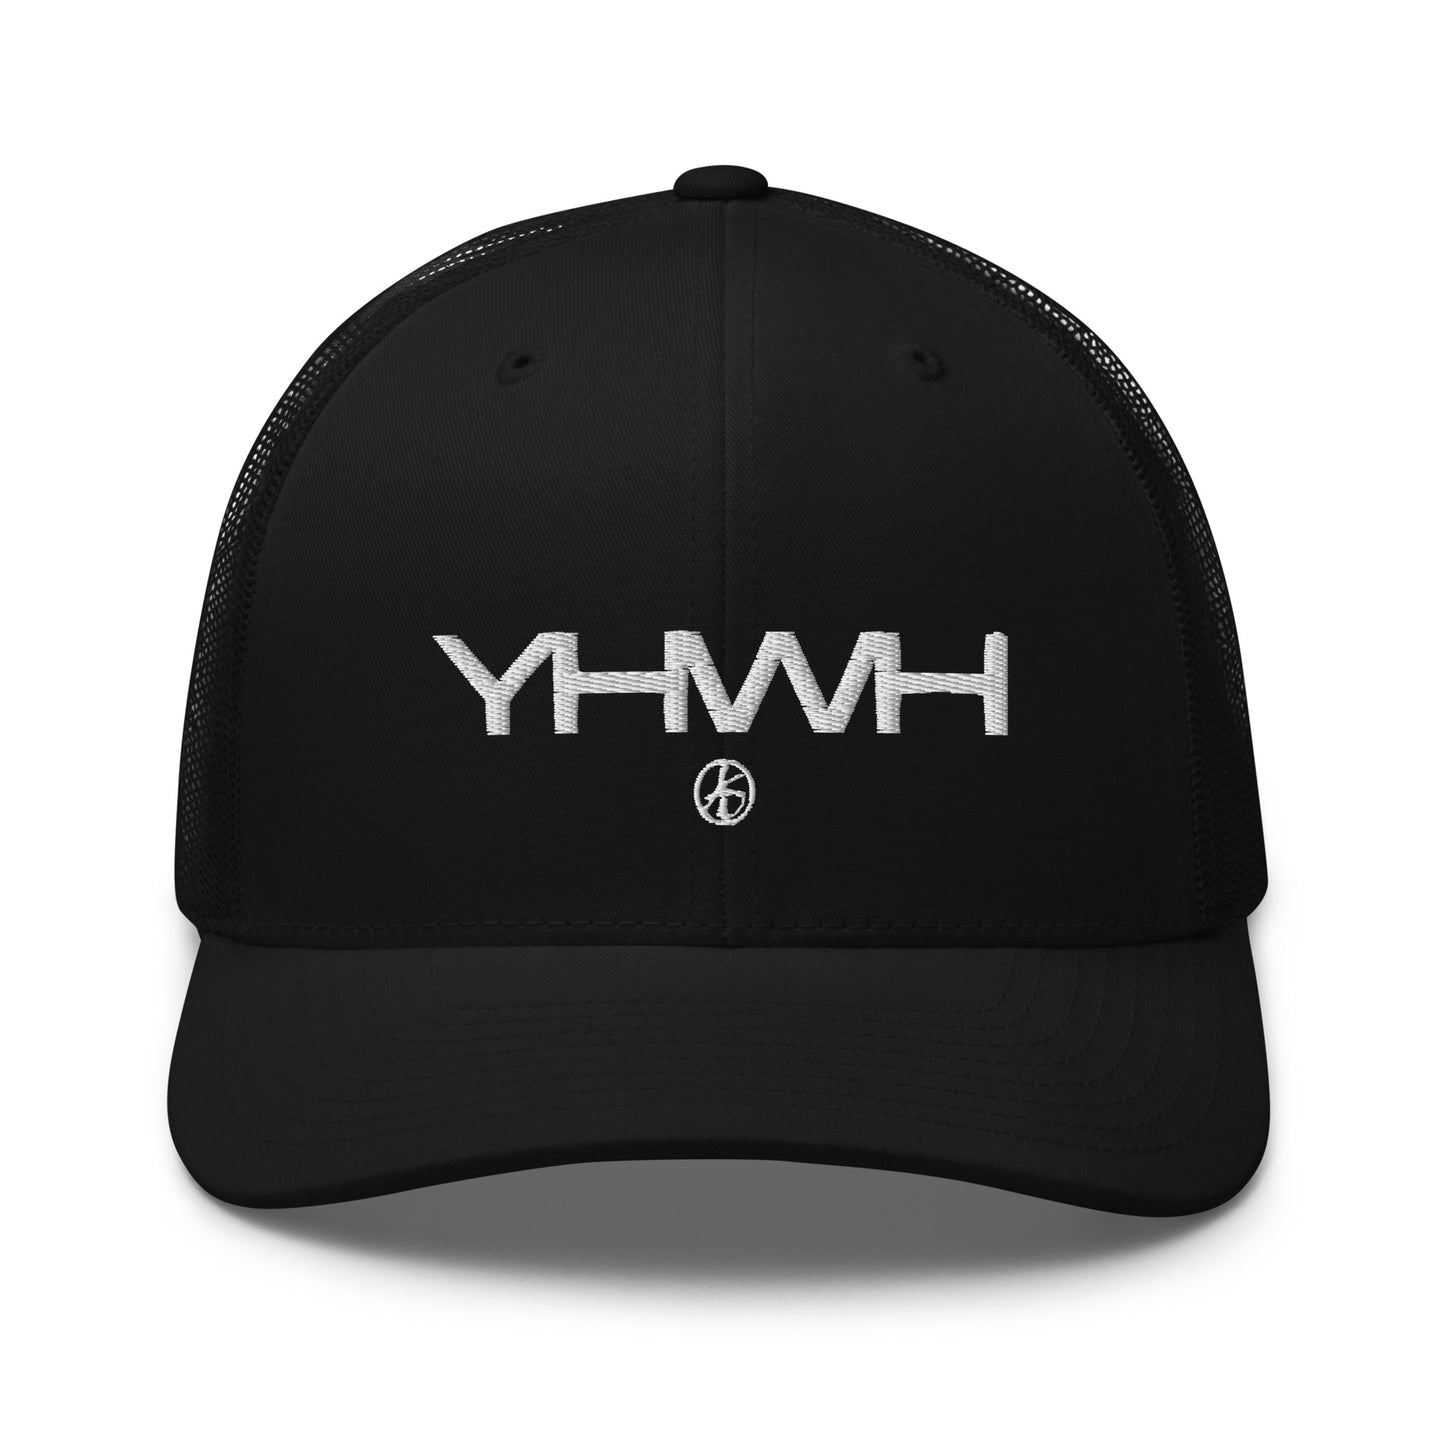 YHWH Trucker Cap